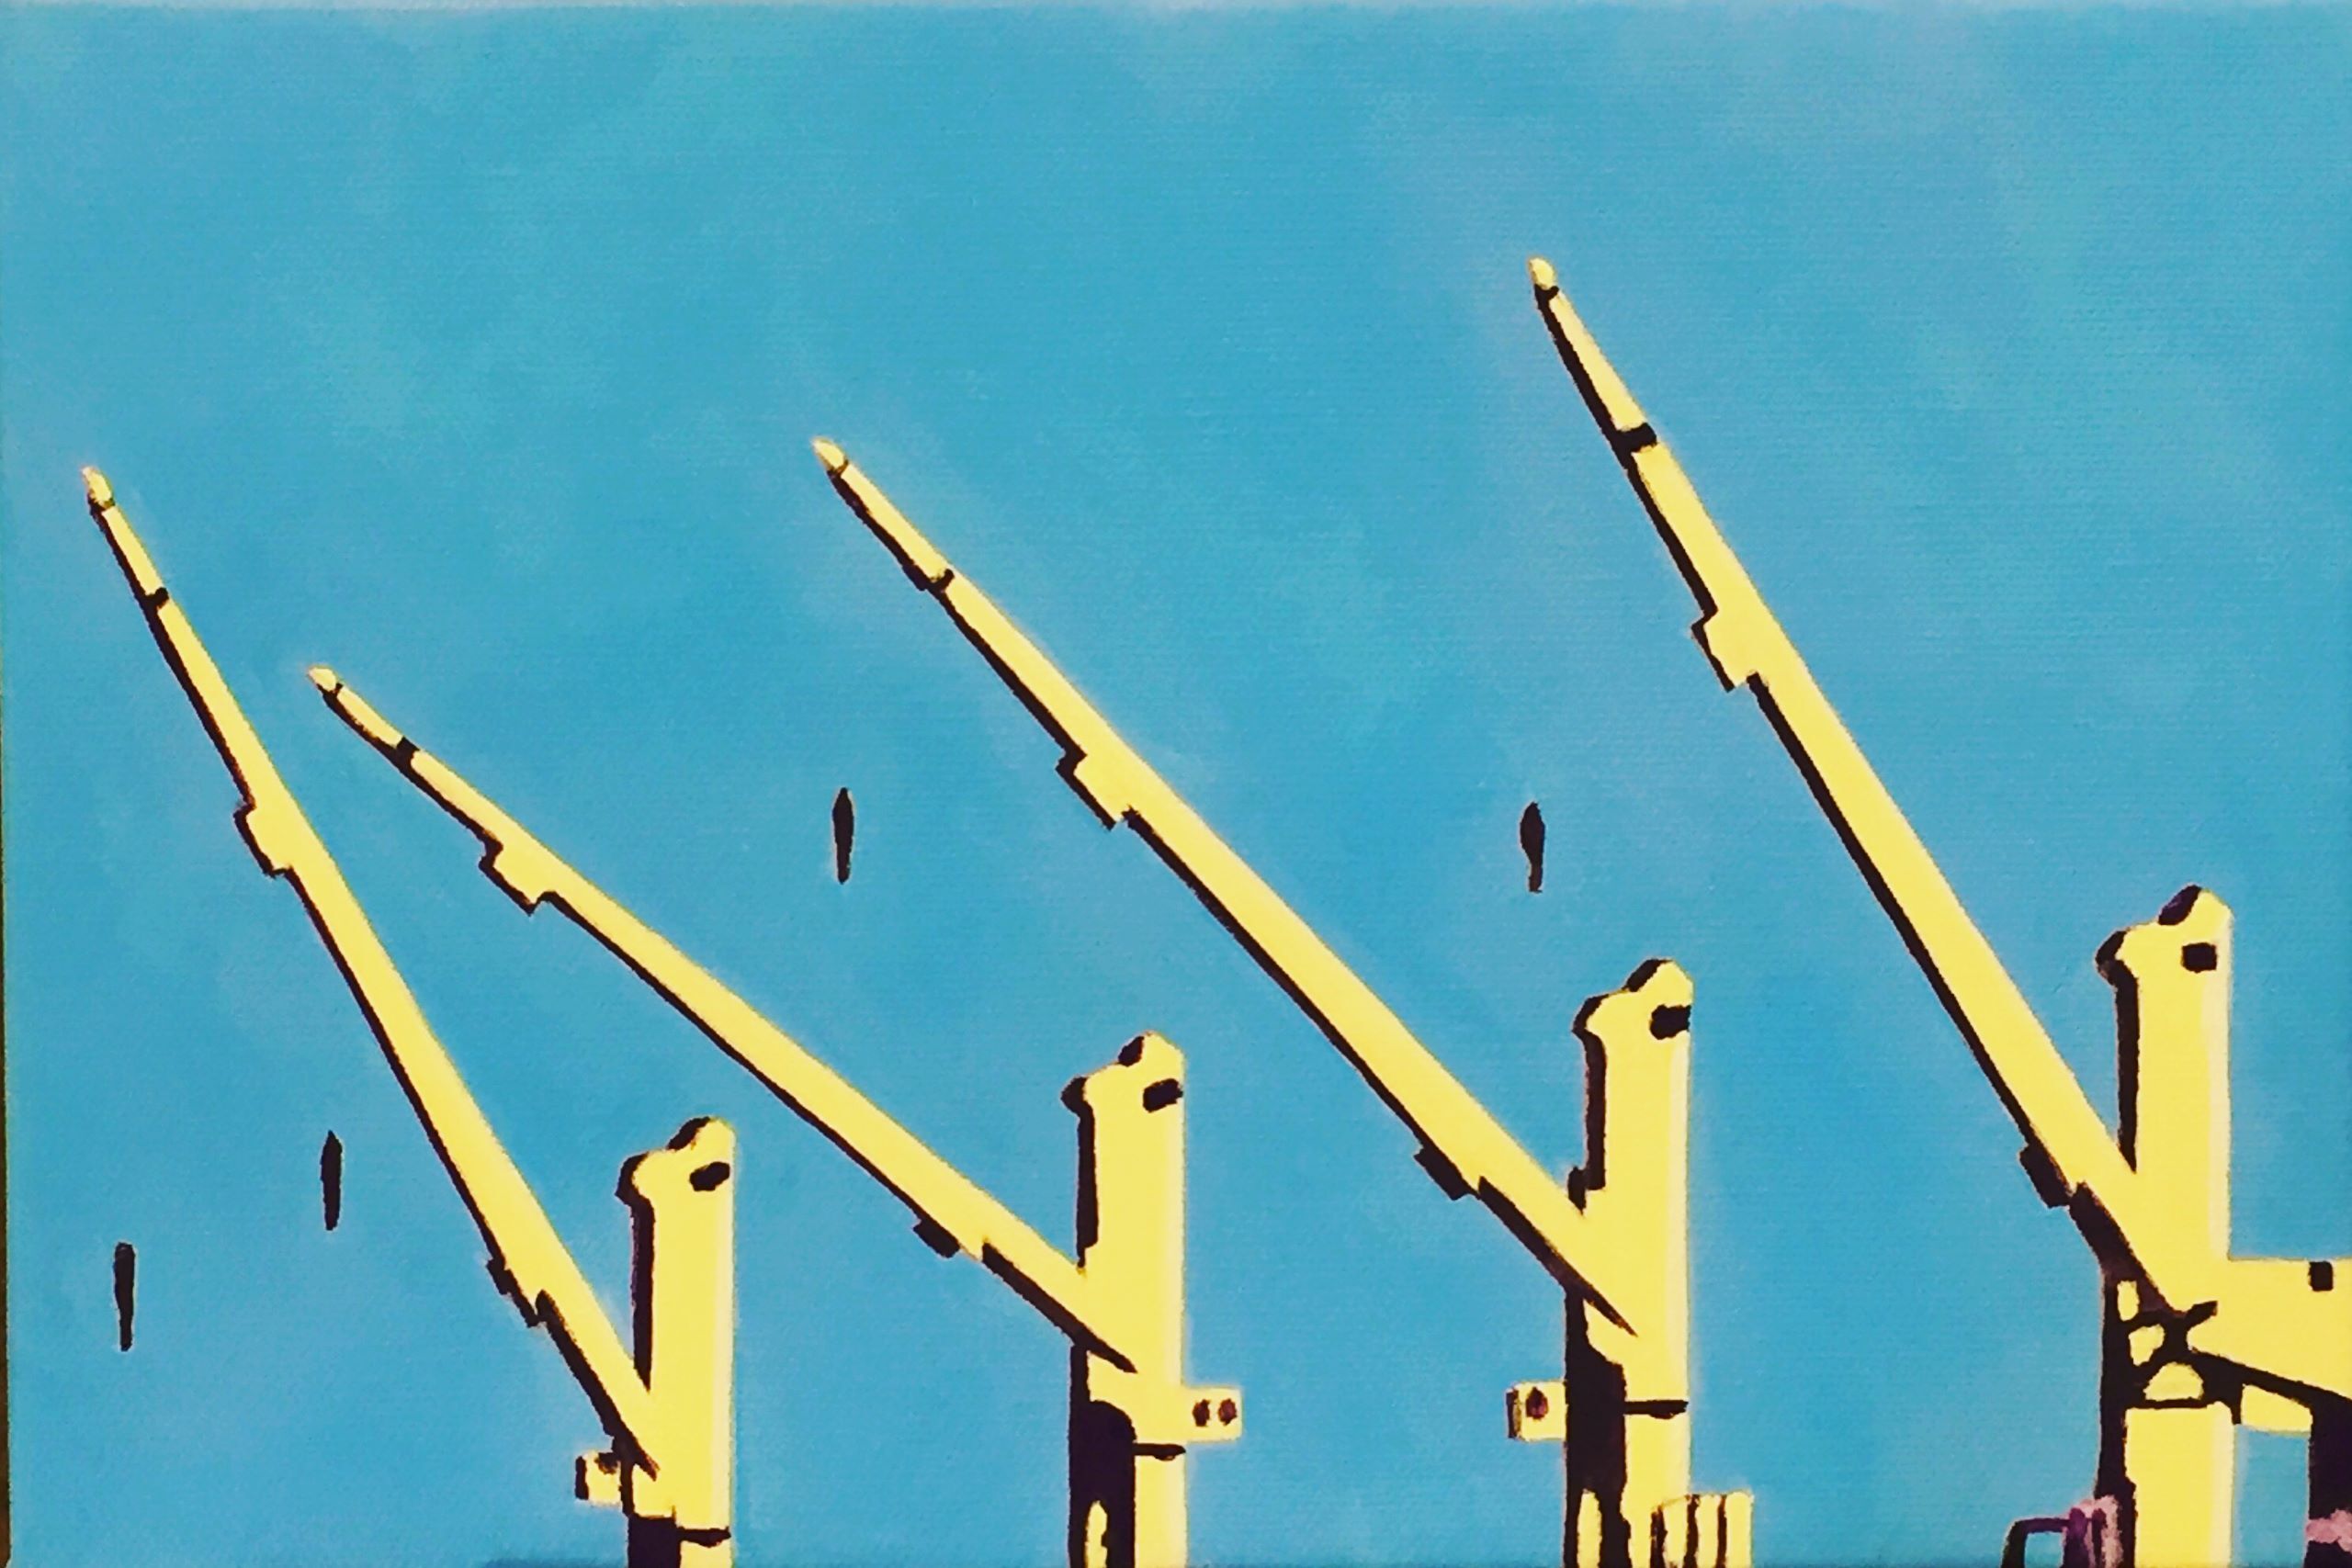 Fremantle Harbour, Ship's Cranes. Acrylic on canvas 30cm by 20cm $350.